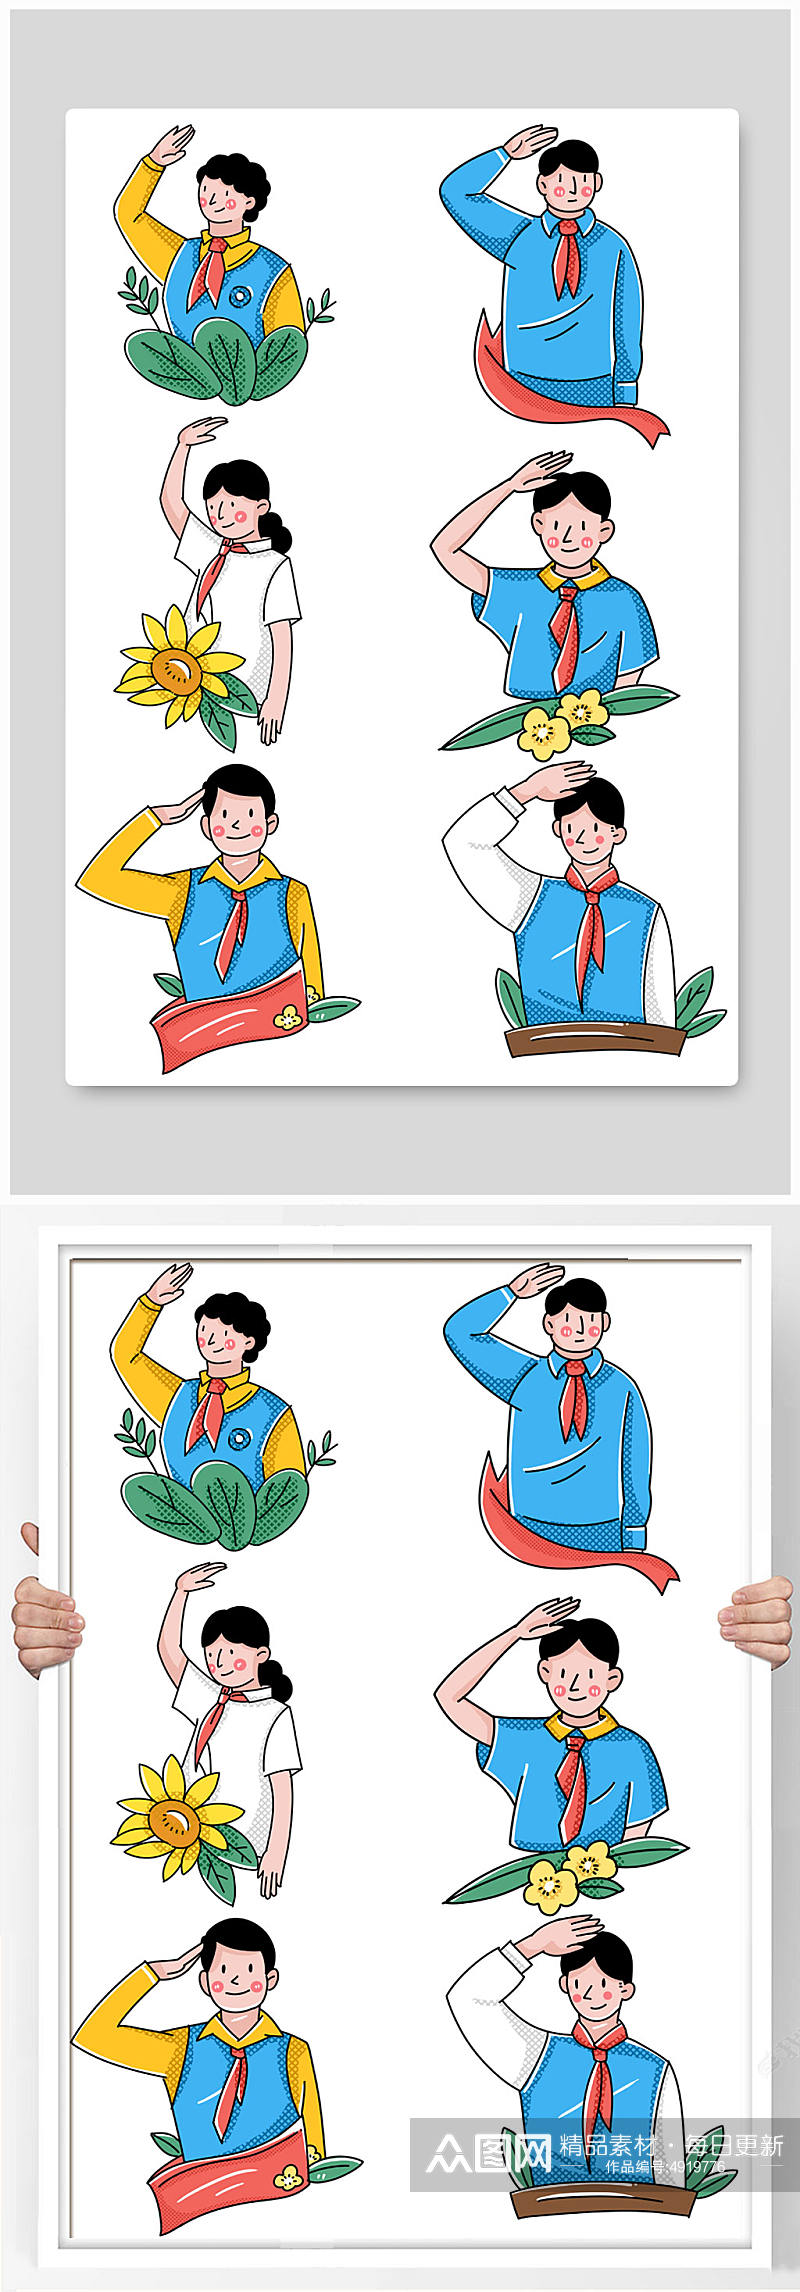 建党节国庆节红领巾少先队员学生爱国插画素材